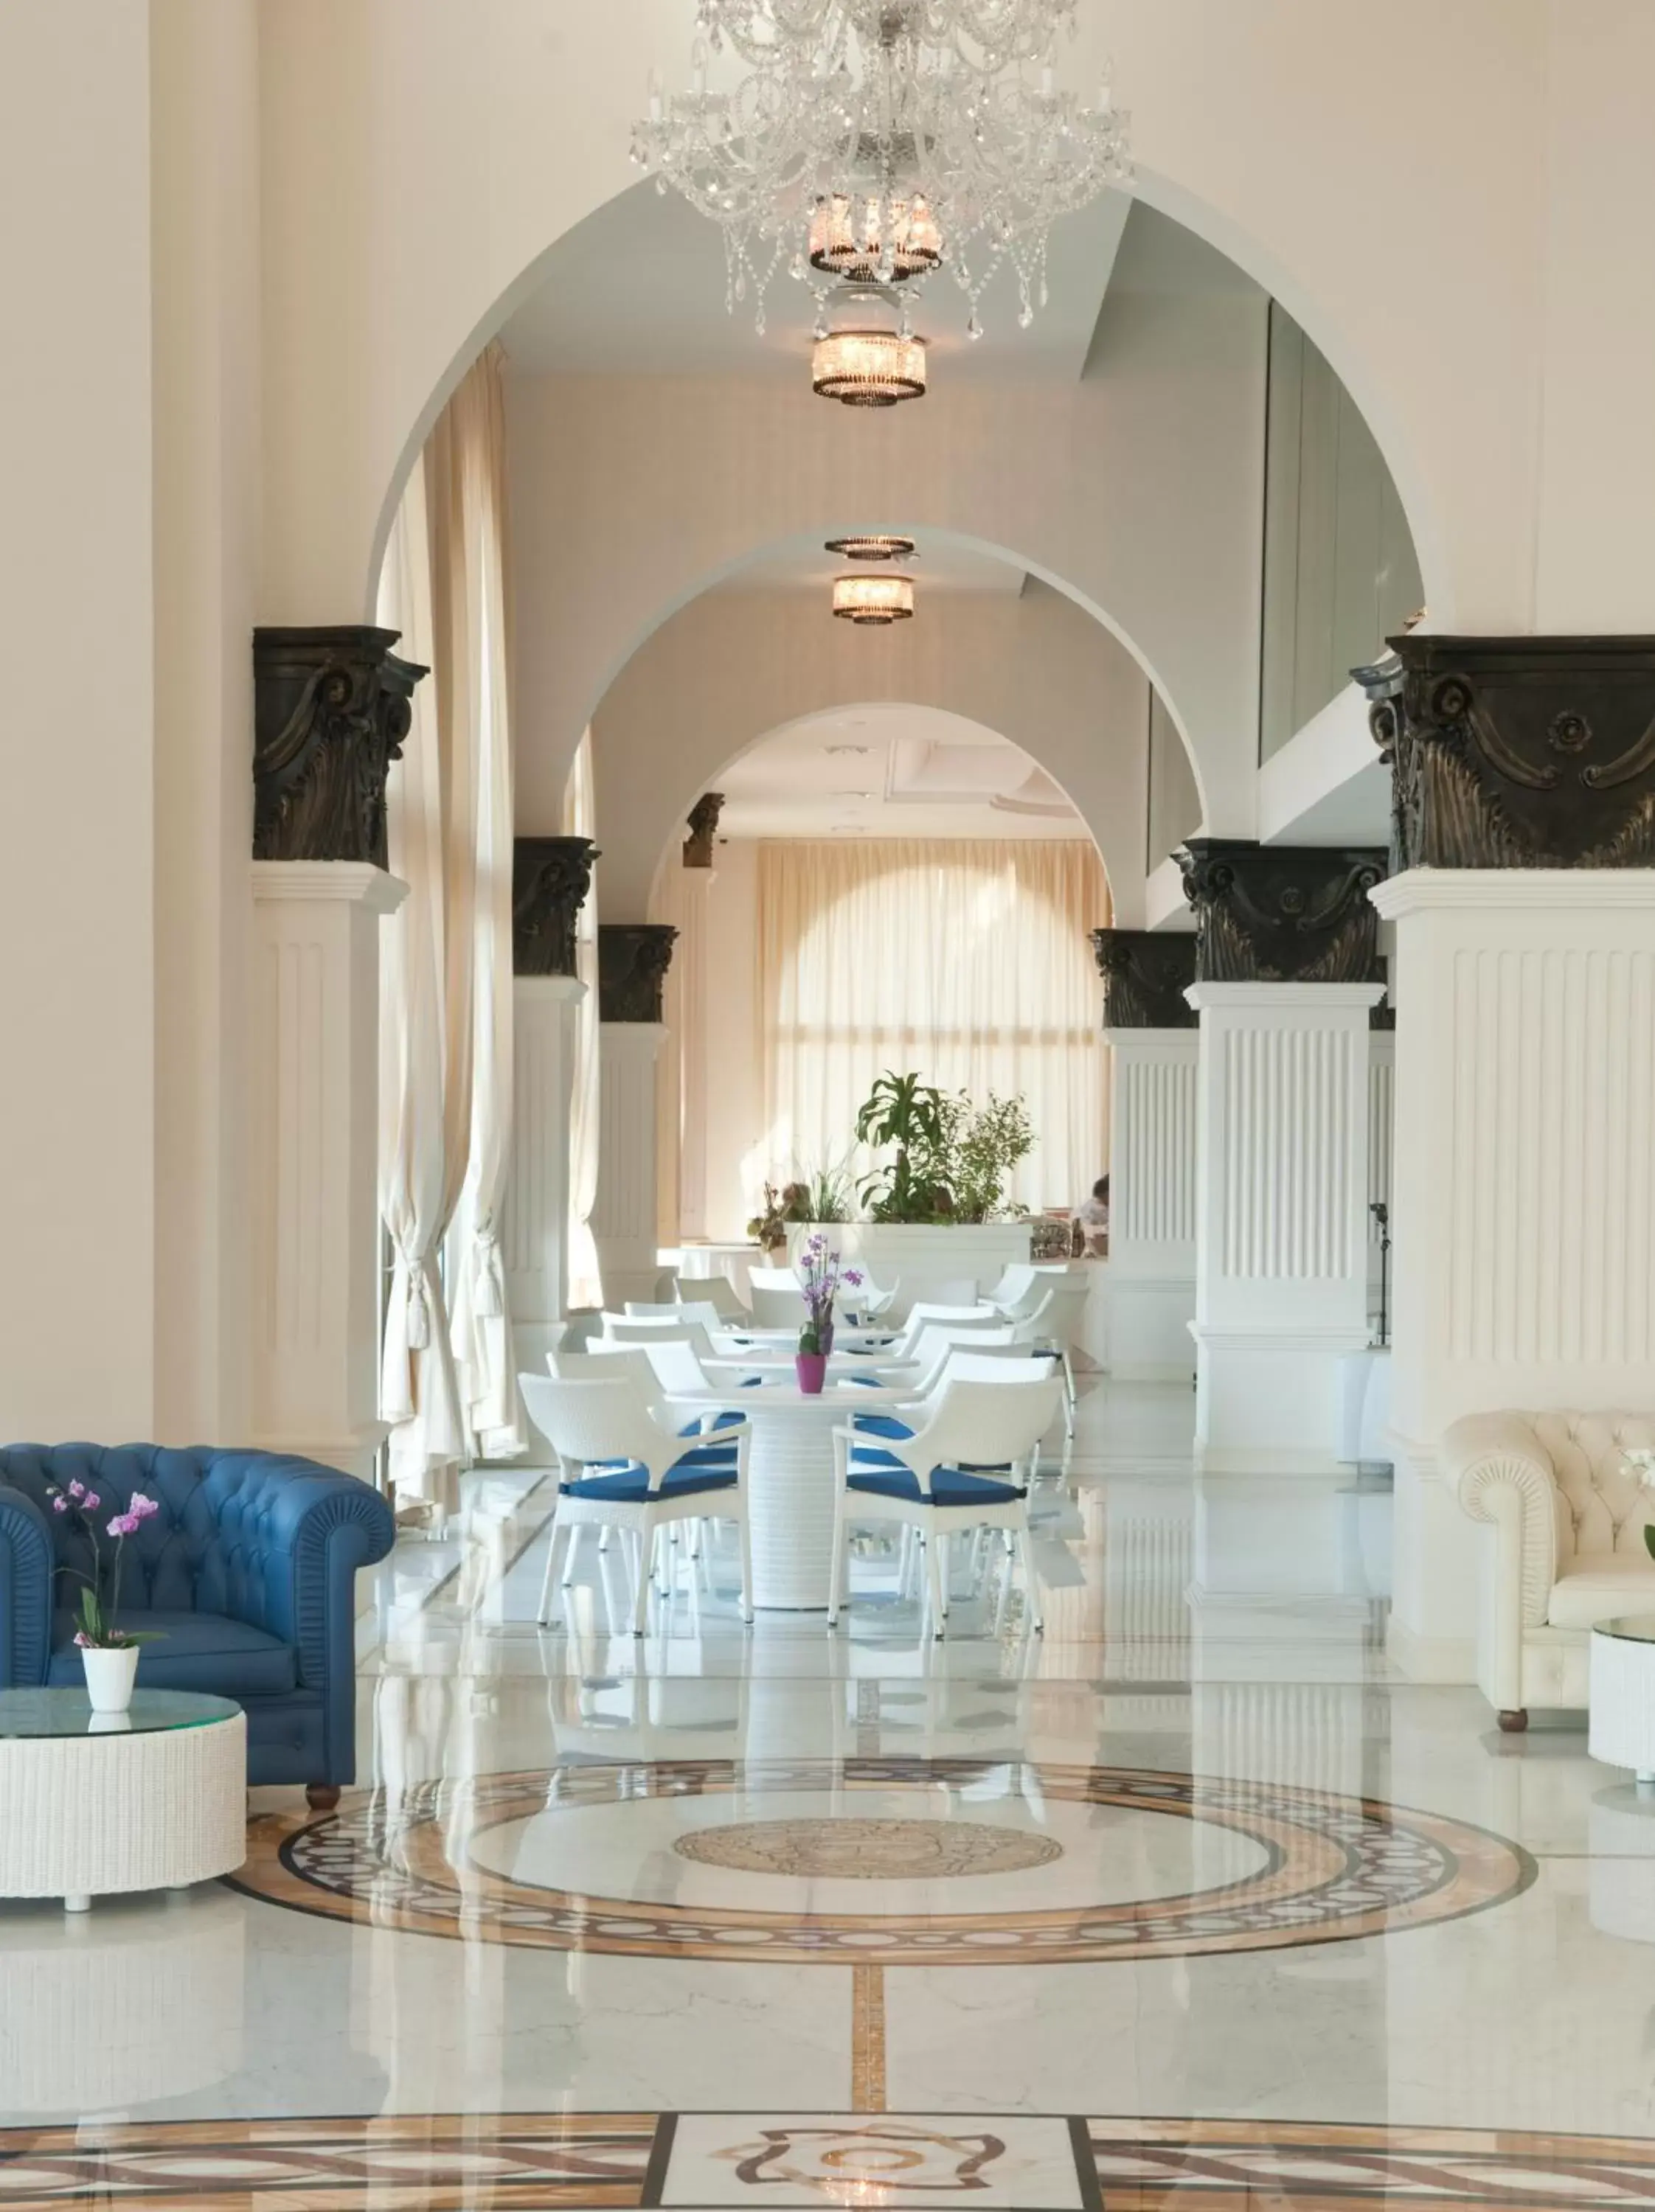 Lobby or reception in Grand Hotel Italia